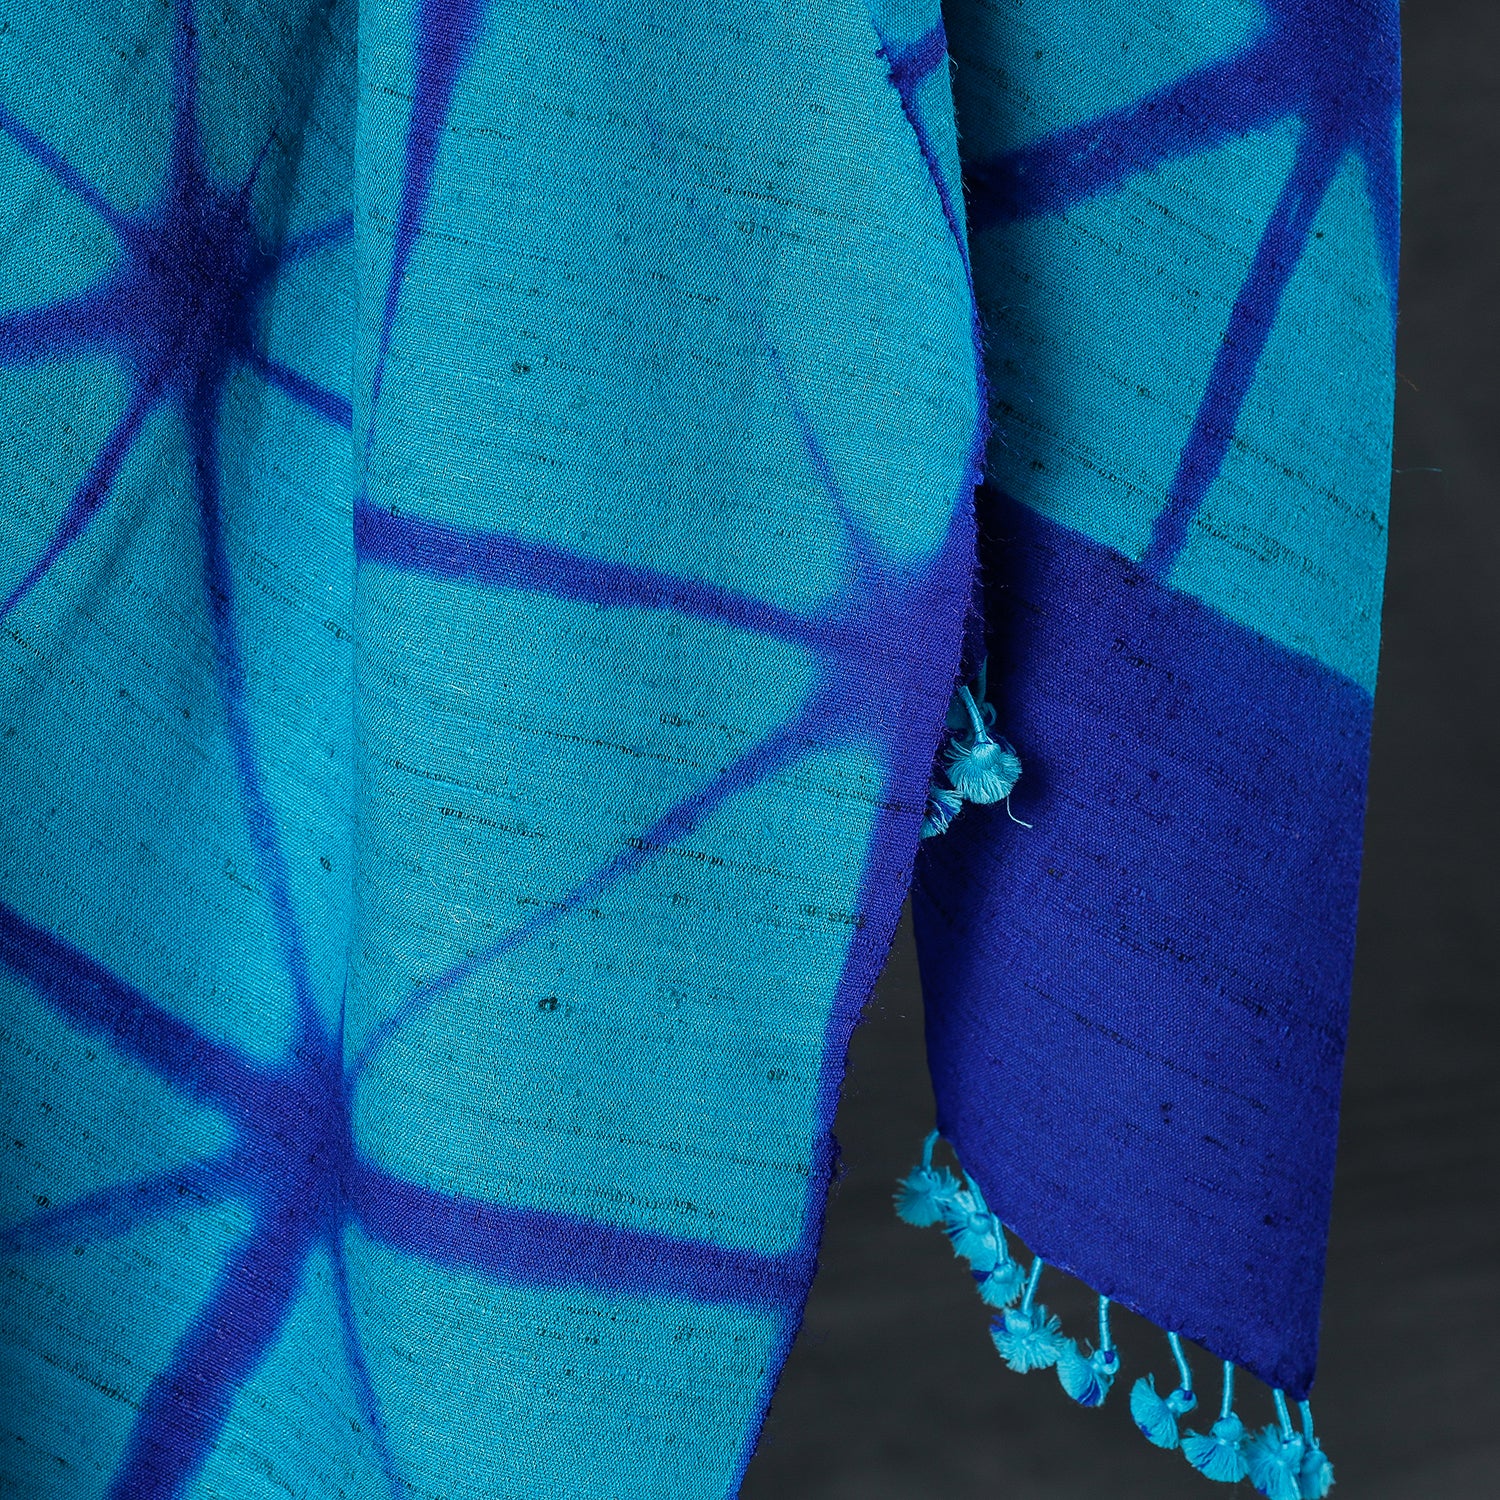 shibori woolen shawl 